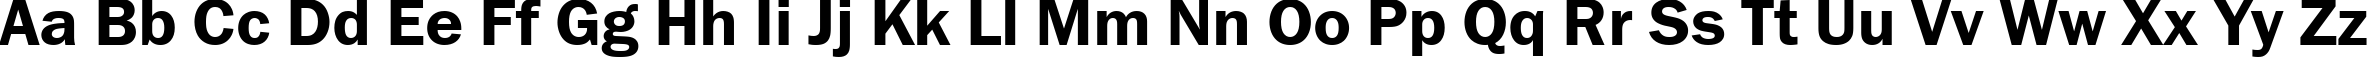 Пример написания английского алфавита шрифтом font168